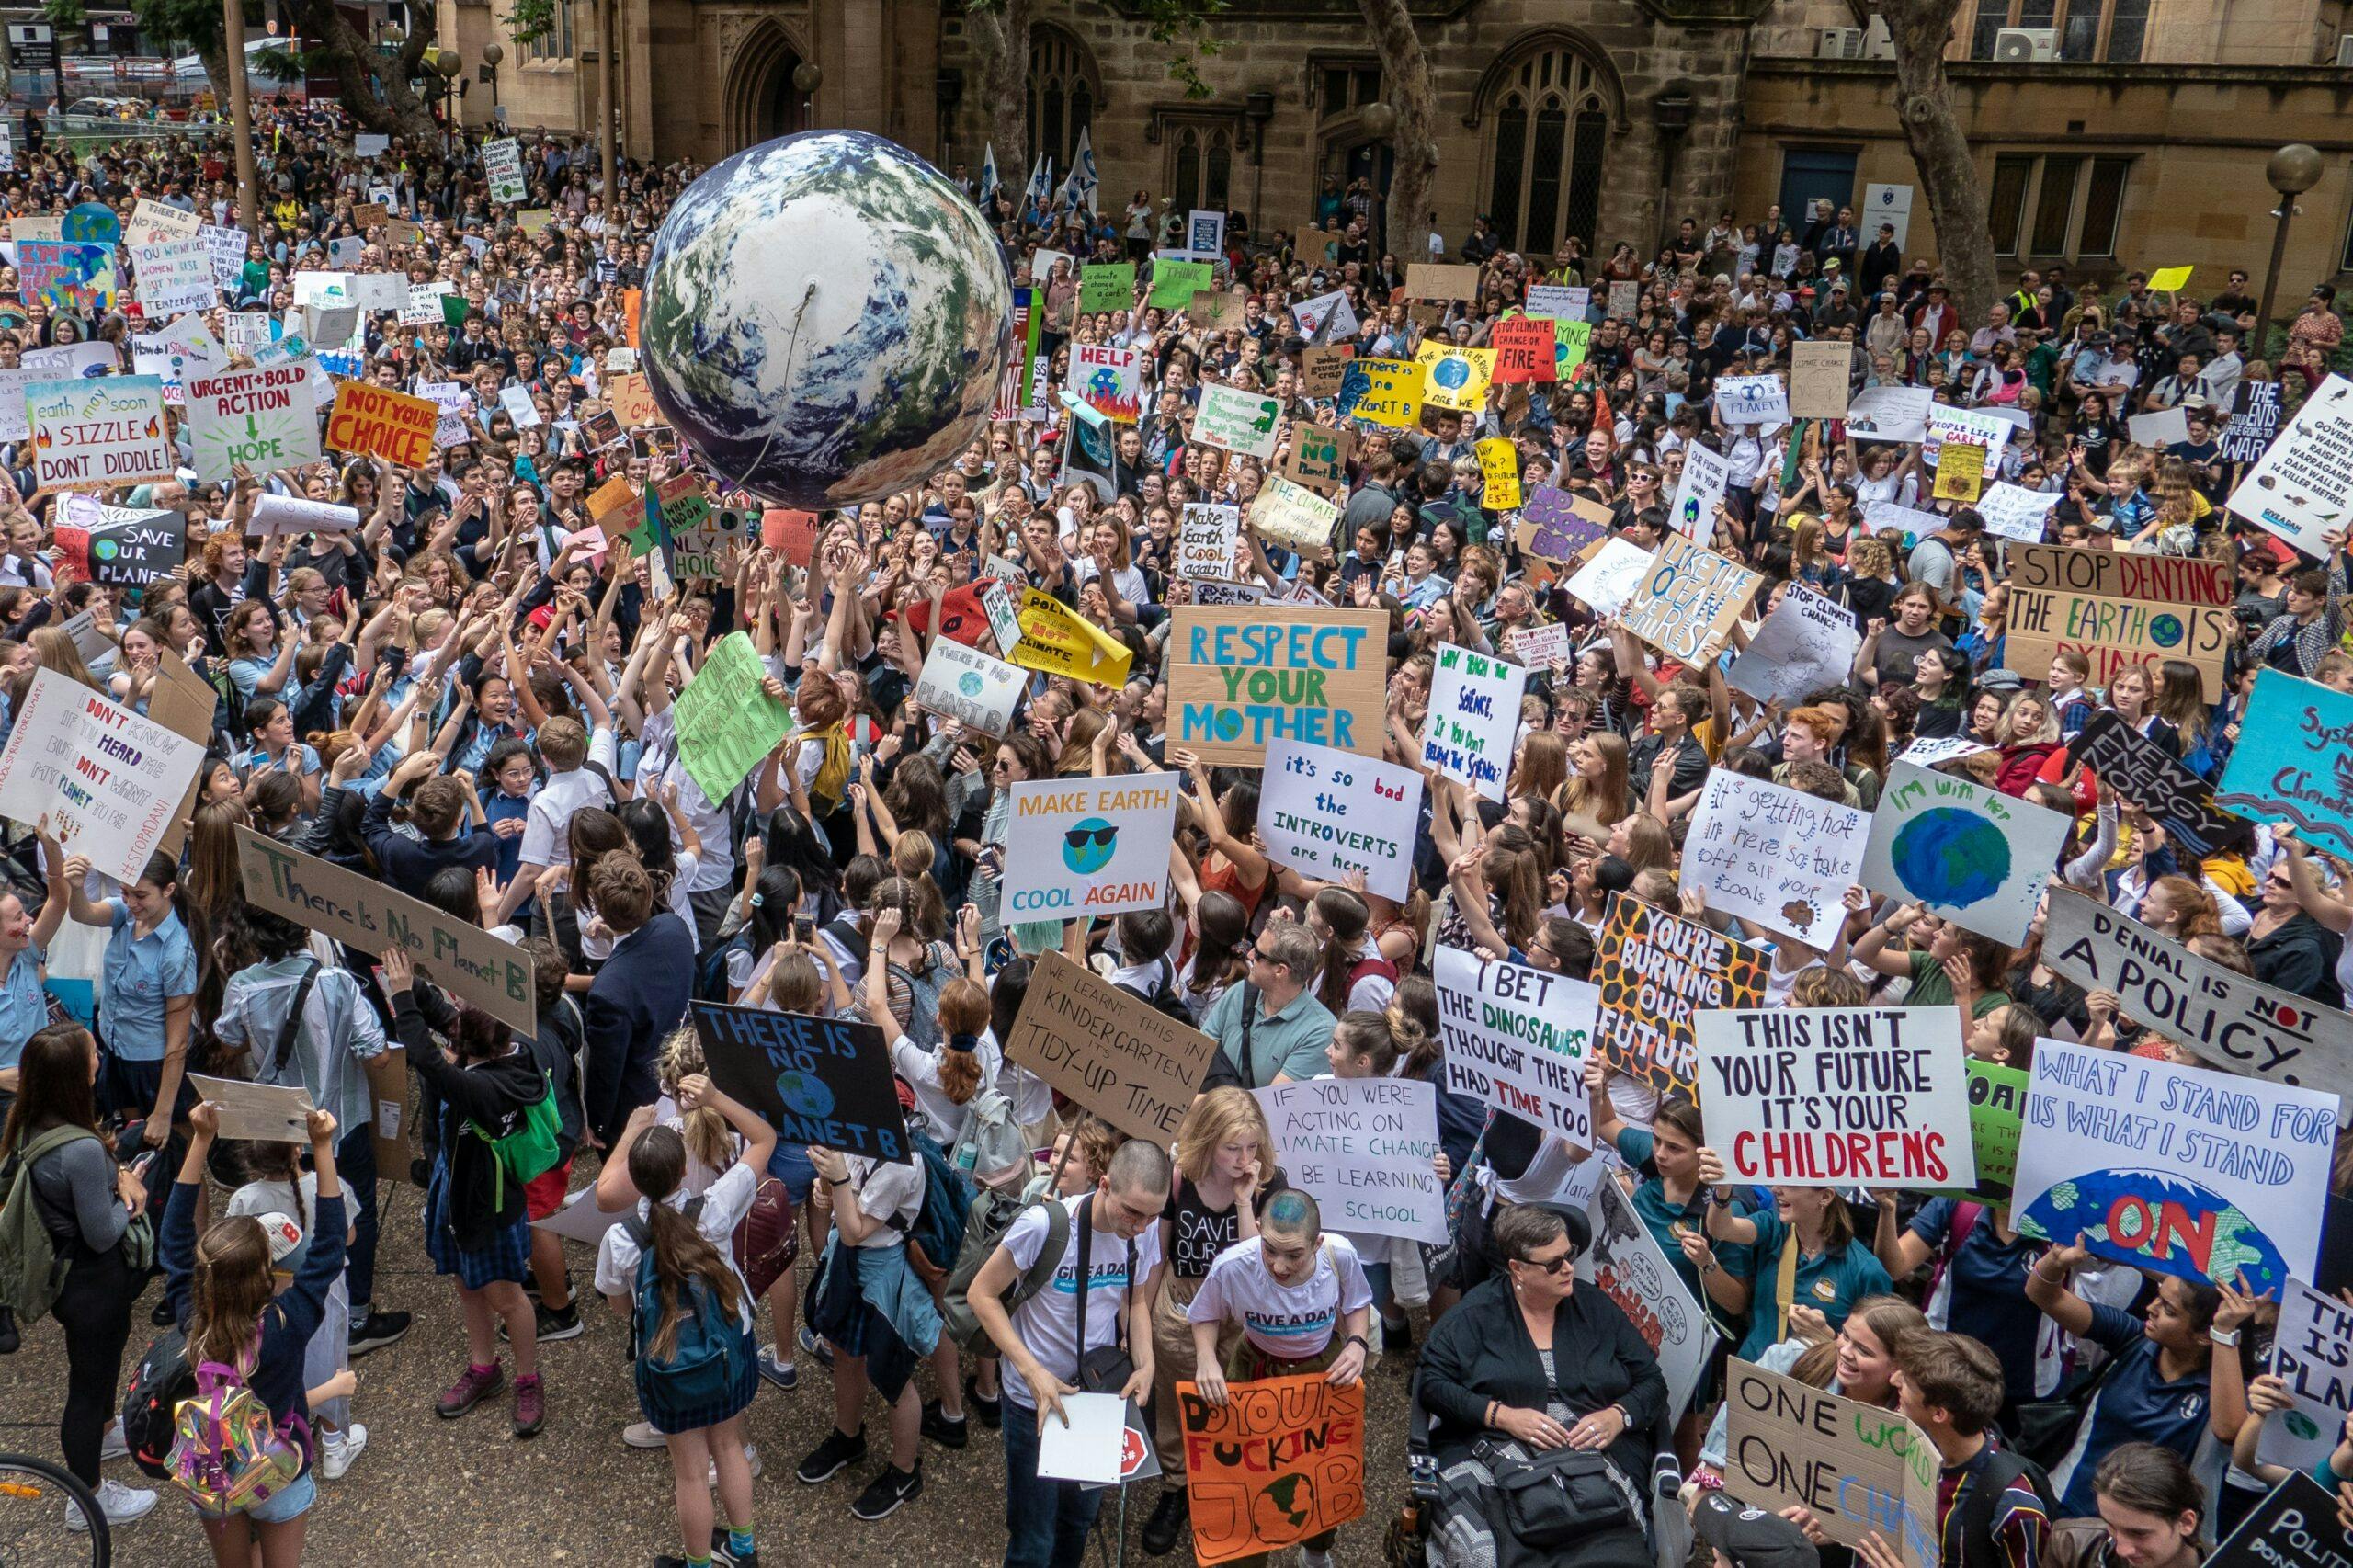 اعتراض ۲۰ هزار دانشجوی استرالیایی به تغییرات اقلیمی در سال ۲۰۱۹، عکس: شاتراستاک